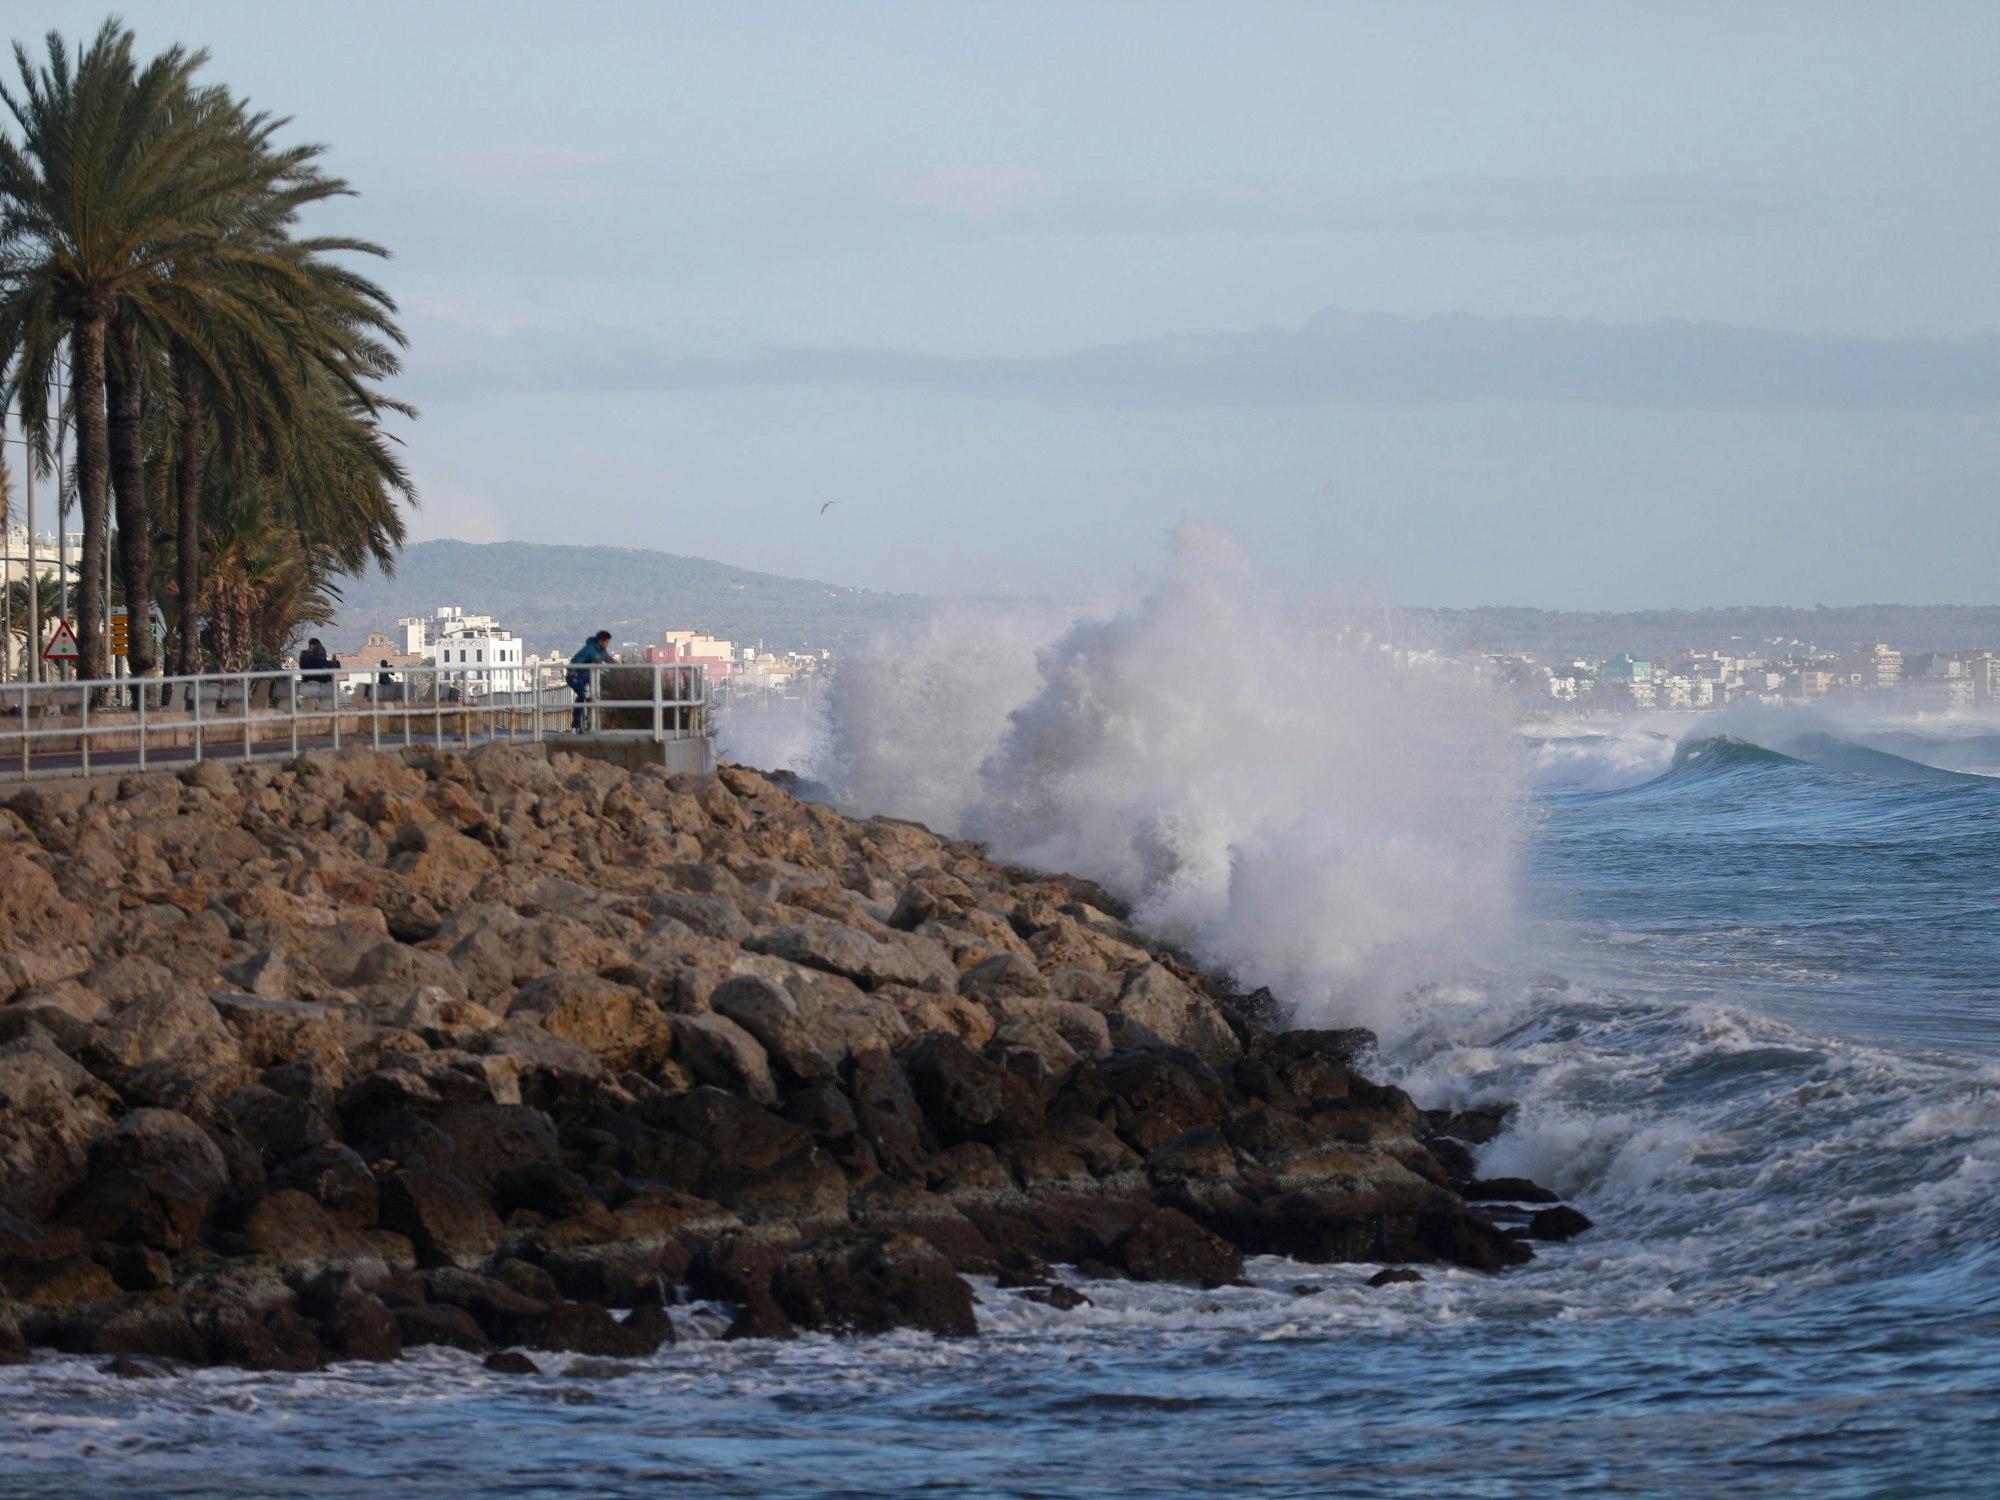 Hohe Wellen sind von der Promenade in Palma auf Mallorca aus zu sehen. Starke Winde und Regenfälle sorgen derzeit für ungemütliches Wetter auf der beliebten Urlaubsinsel. Vergangenen Dienstag (17. Januar 2023) kam deshalb eine deutsche Schwimmerin ums Leben.